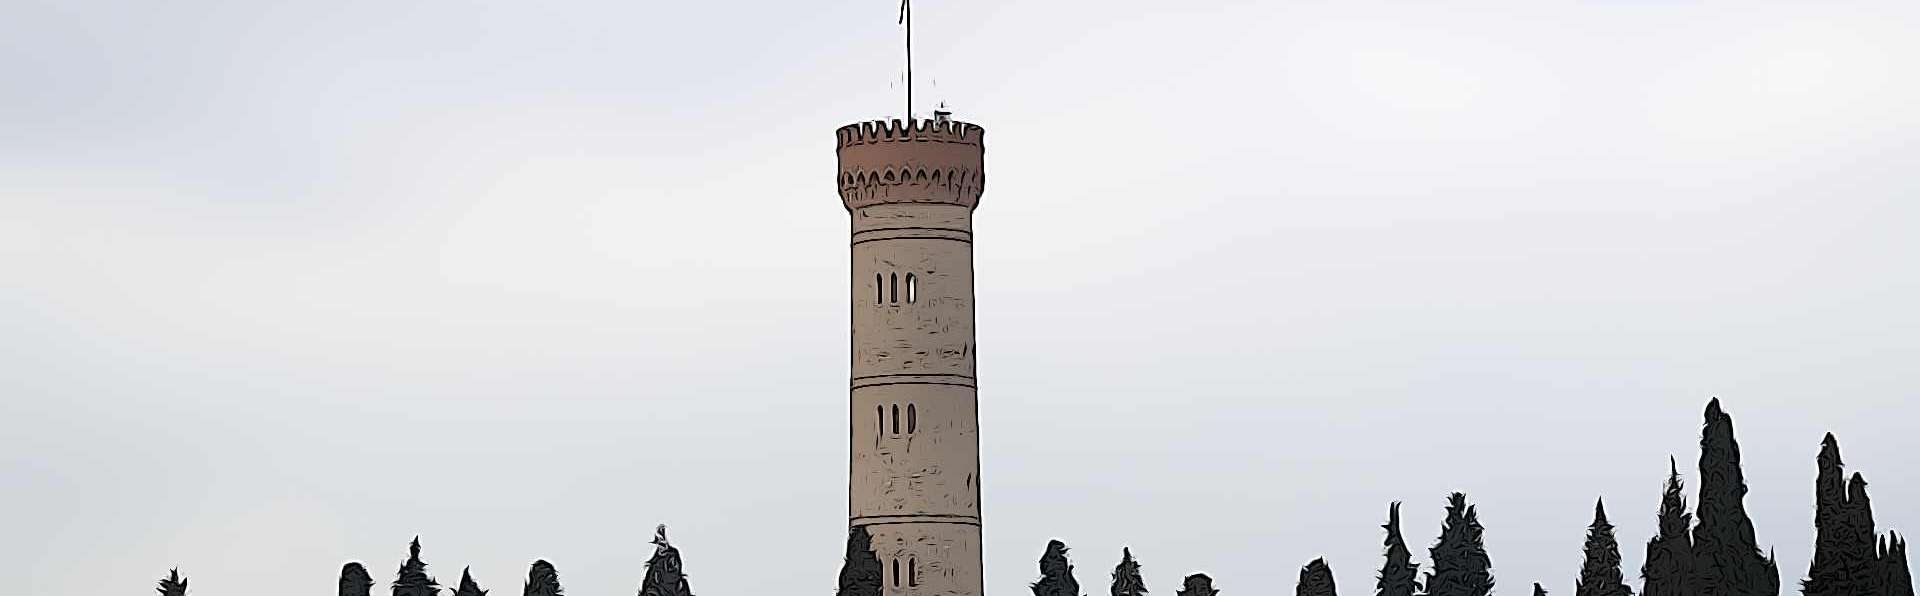 The Tower of San Martino della Battaglia